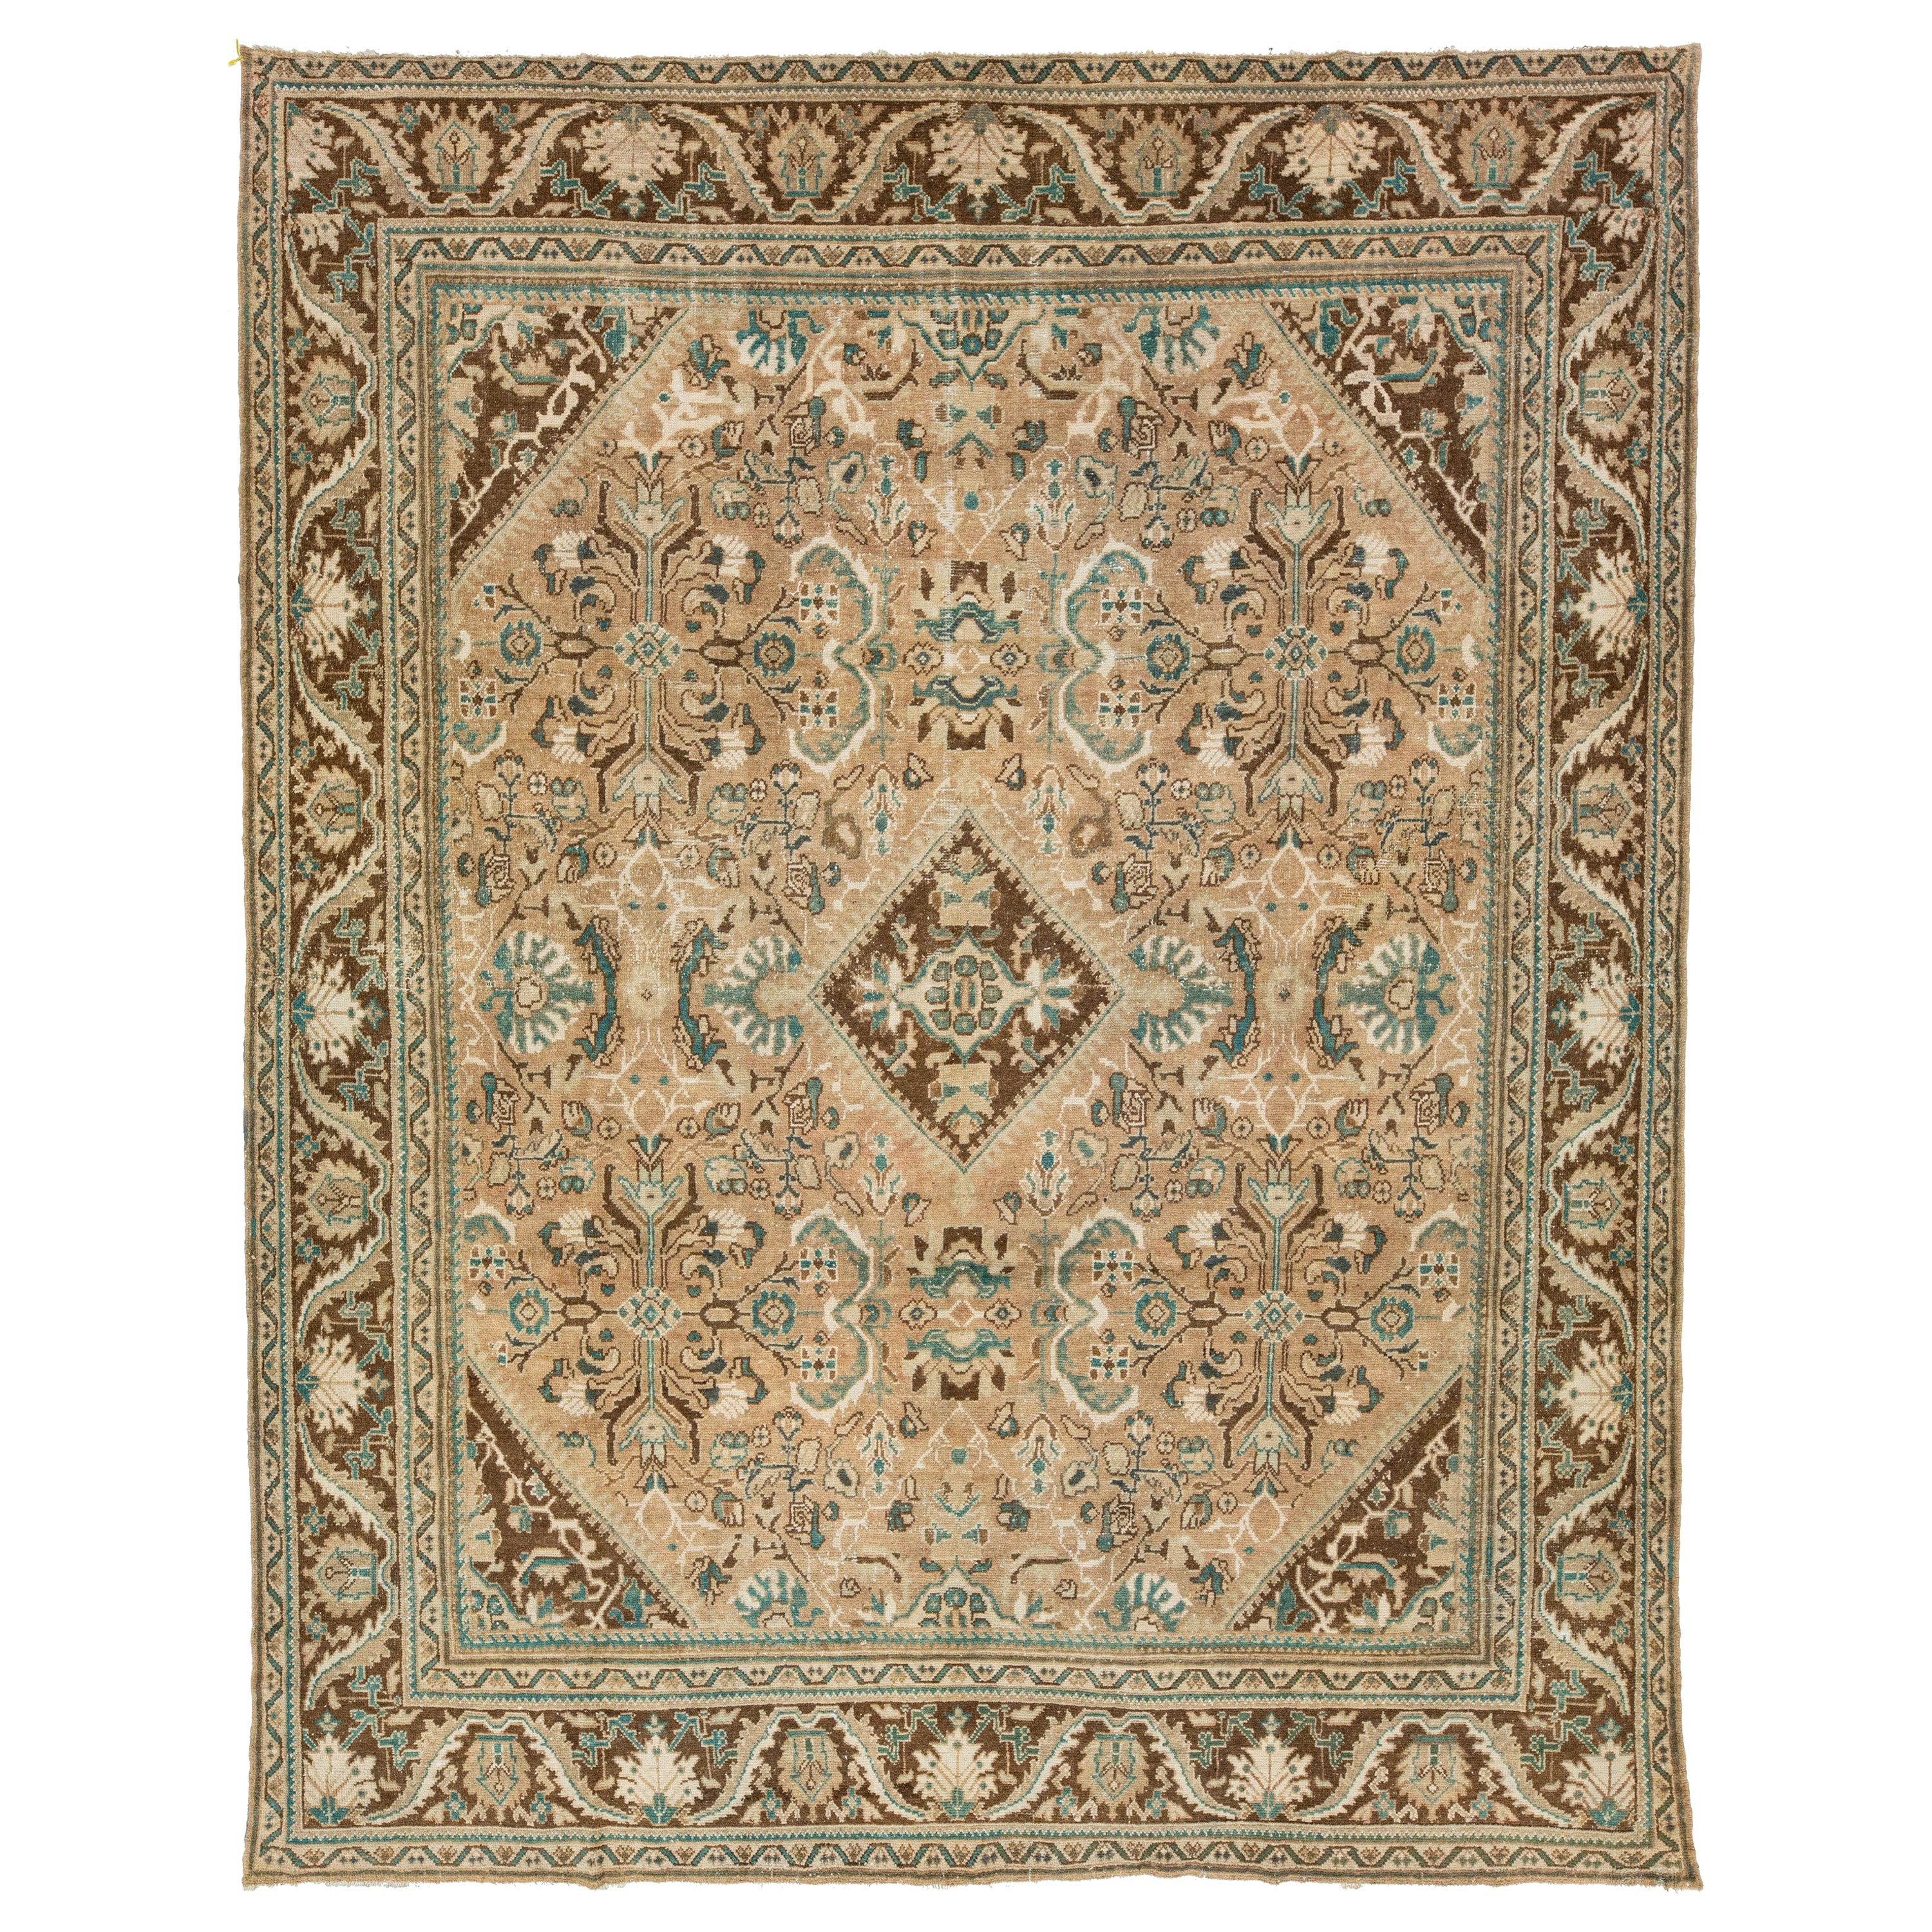 Handmade Vintage Mahal Persian Wool Rug With Floral Pattern In Brown